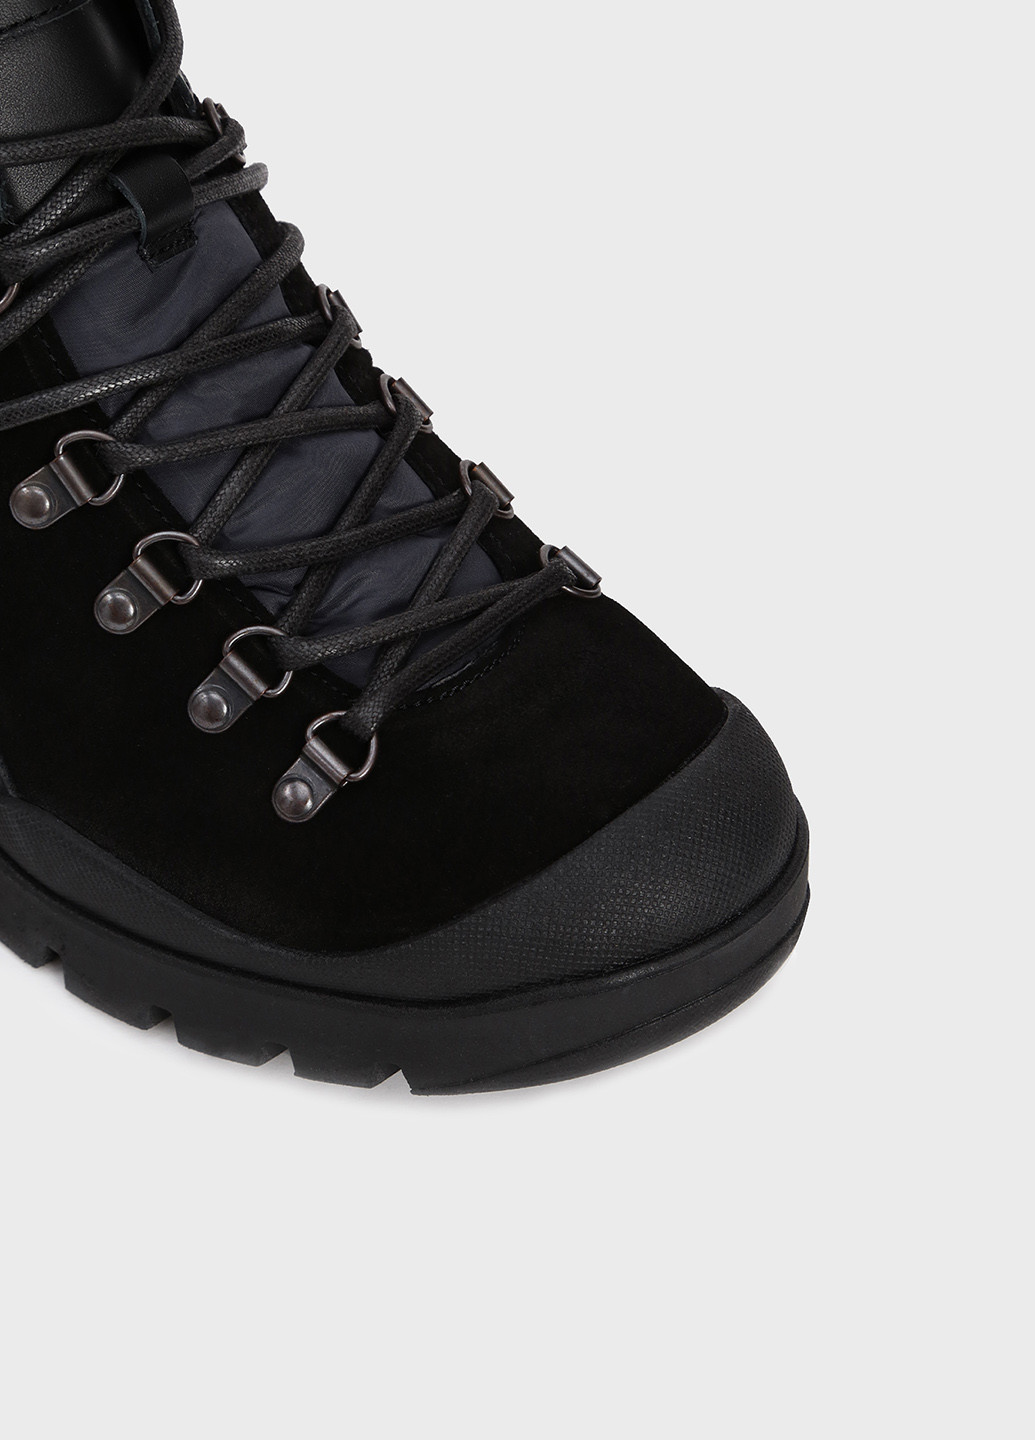 Черные осенние ботинки хайкеры Tommy Hilfiger